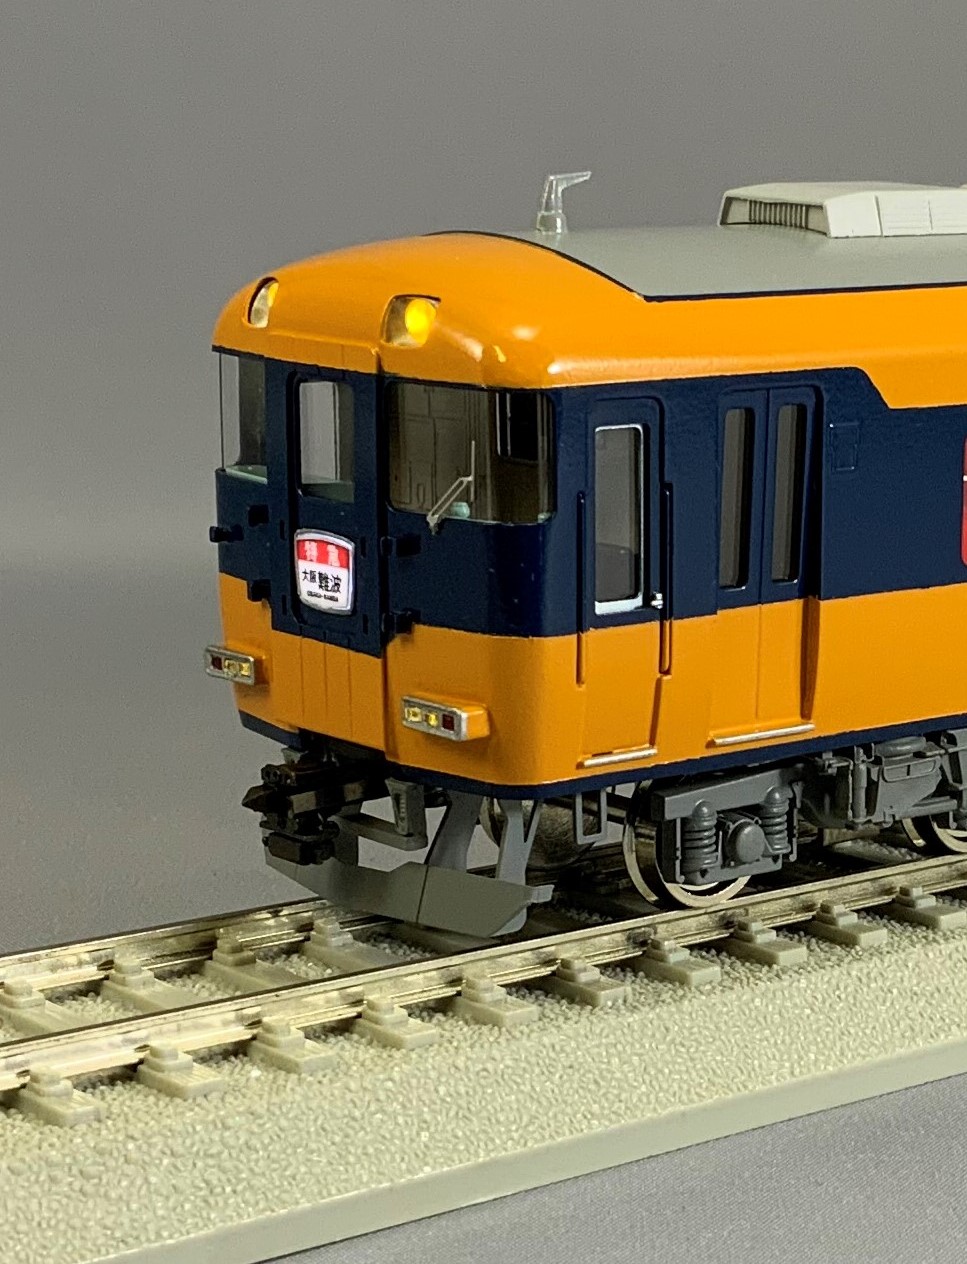 近畿日本鉄道12200系「スナック・カー」 - 鉄道模型の総合メーカー 